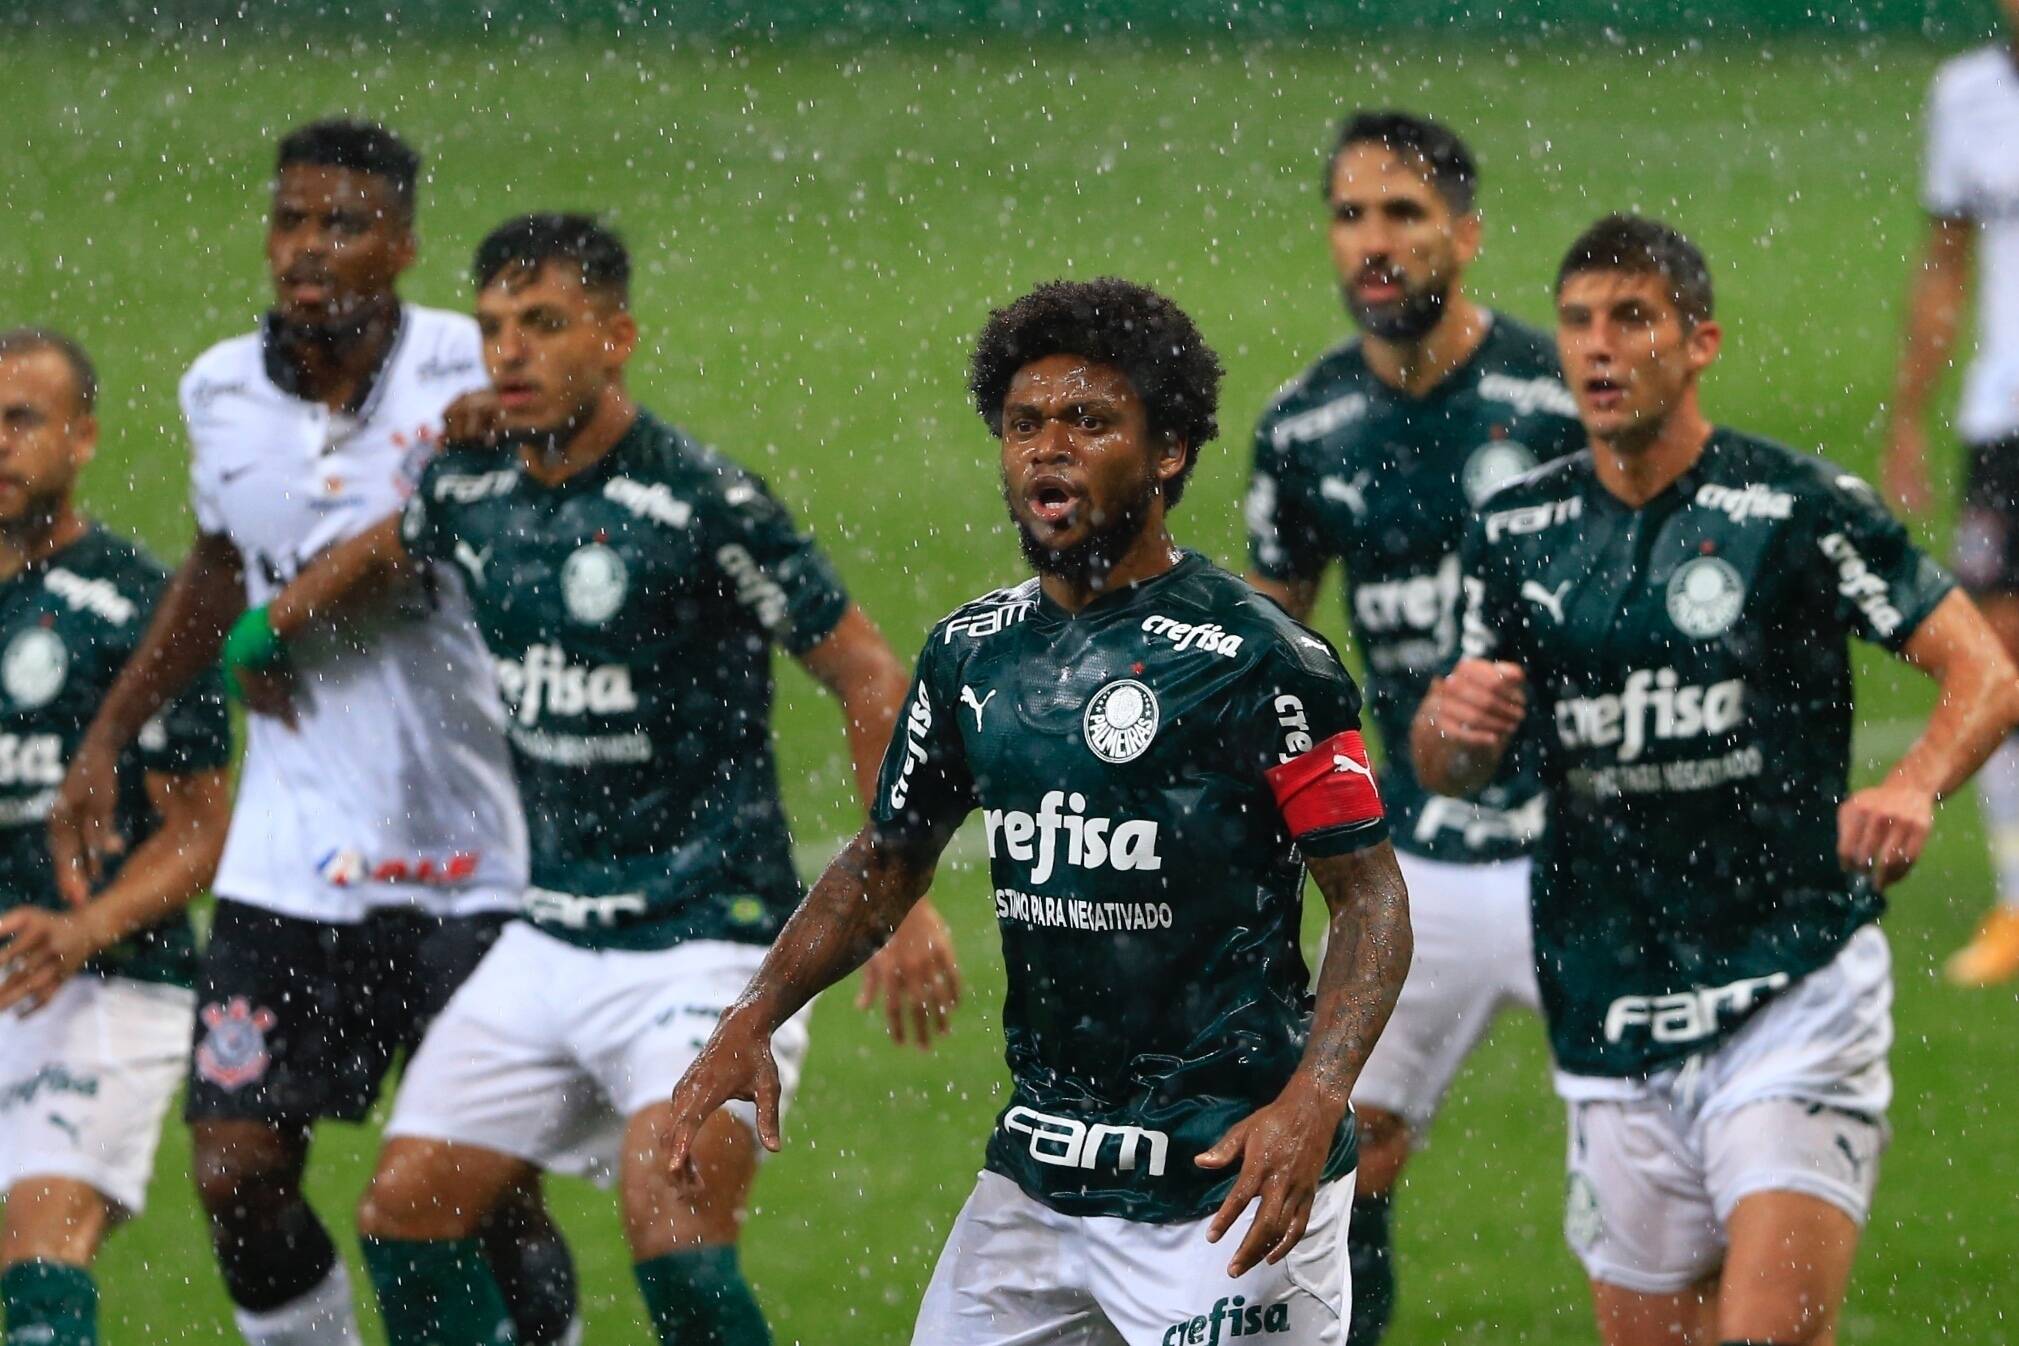 Palmeiras X Corinthians SÃo Paulo, Sp 18.01.2021: Palmeiras X Corinthians Luiz Adriano Do Palmeiras During The Game